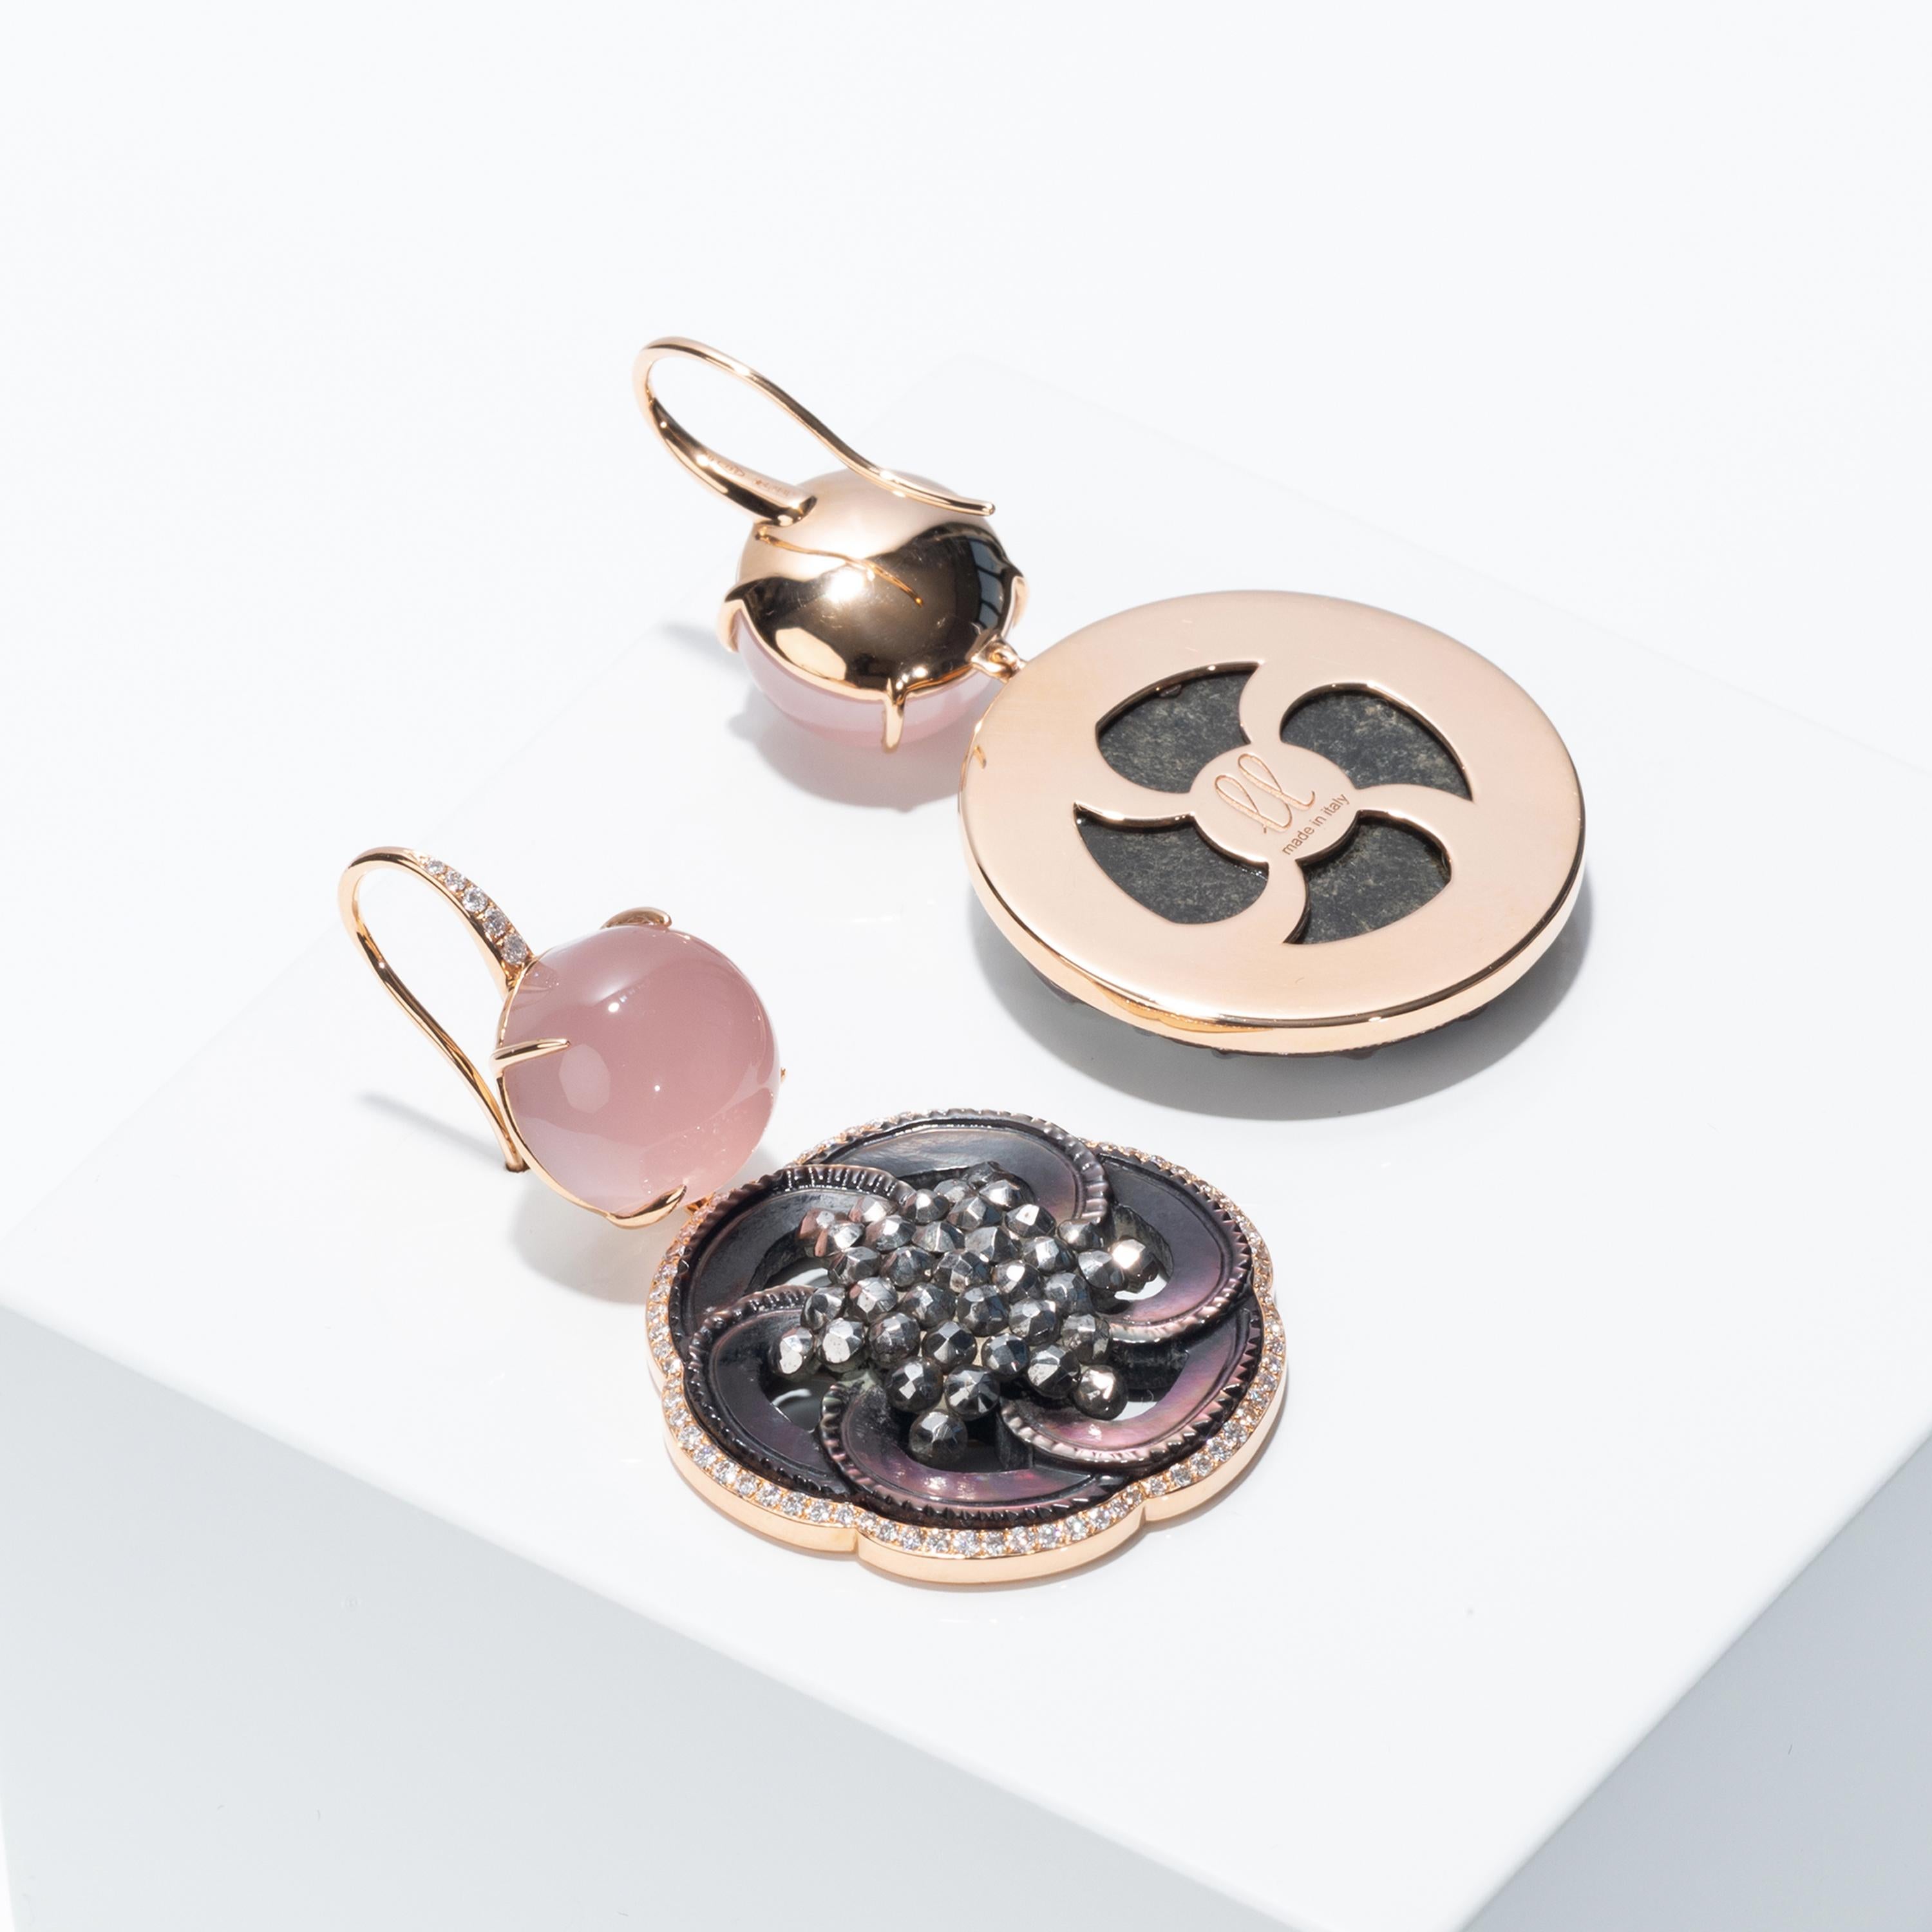 Cabochon Francesca Villa's Asymmetric 18k Gold Quartz Diamond Button Chic Pink Earrings For Sale